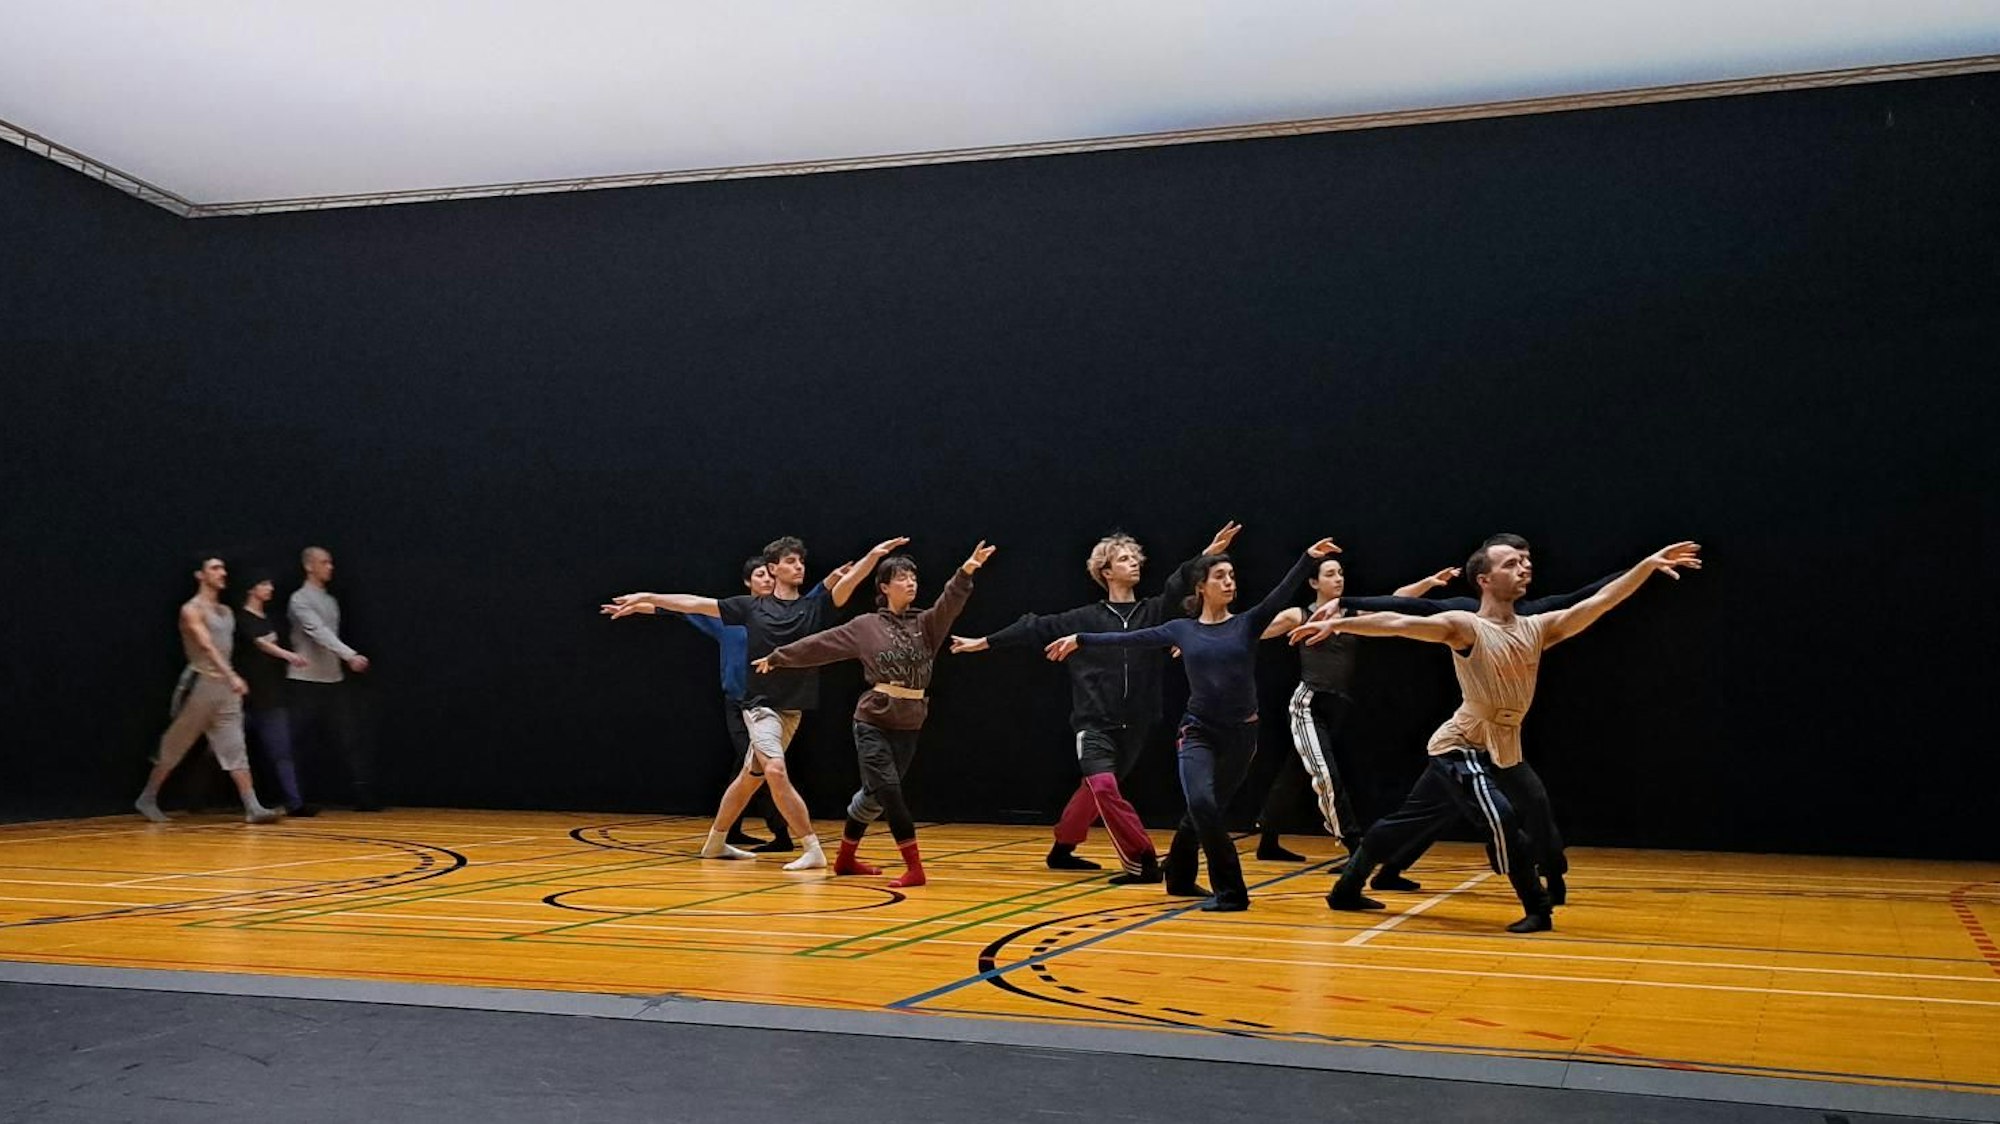 Das Ballet of Dance hat am 8. März 2023 im Rahmen der lit.Cologne zur öffentlichen Probe im Schauspiel Köln eingeladen. Im Anschluss redeten Dramaturg Tobias Staab und Choreograf Richard Siegal über Text im Ballett